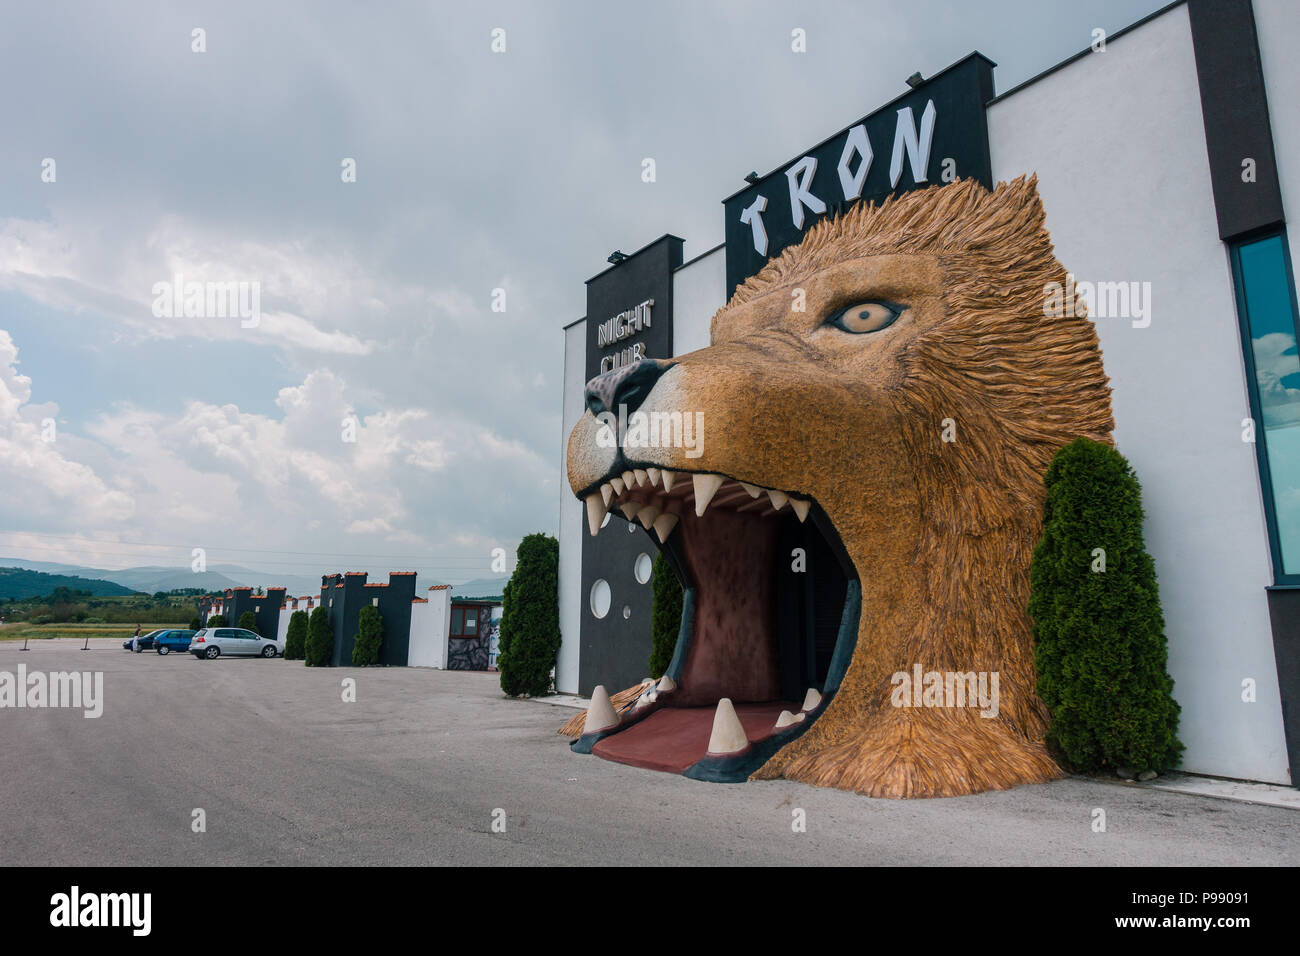 Le lion géant bouche entrée de Tron discothèque, près de Travnik, Bosnie et Herzégovine Banque D'Images